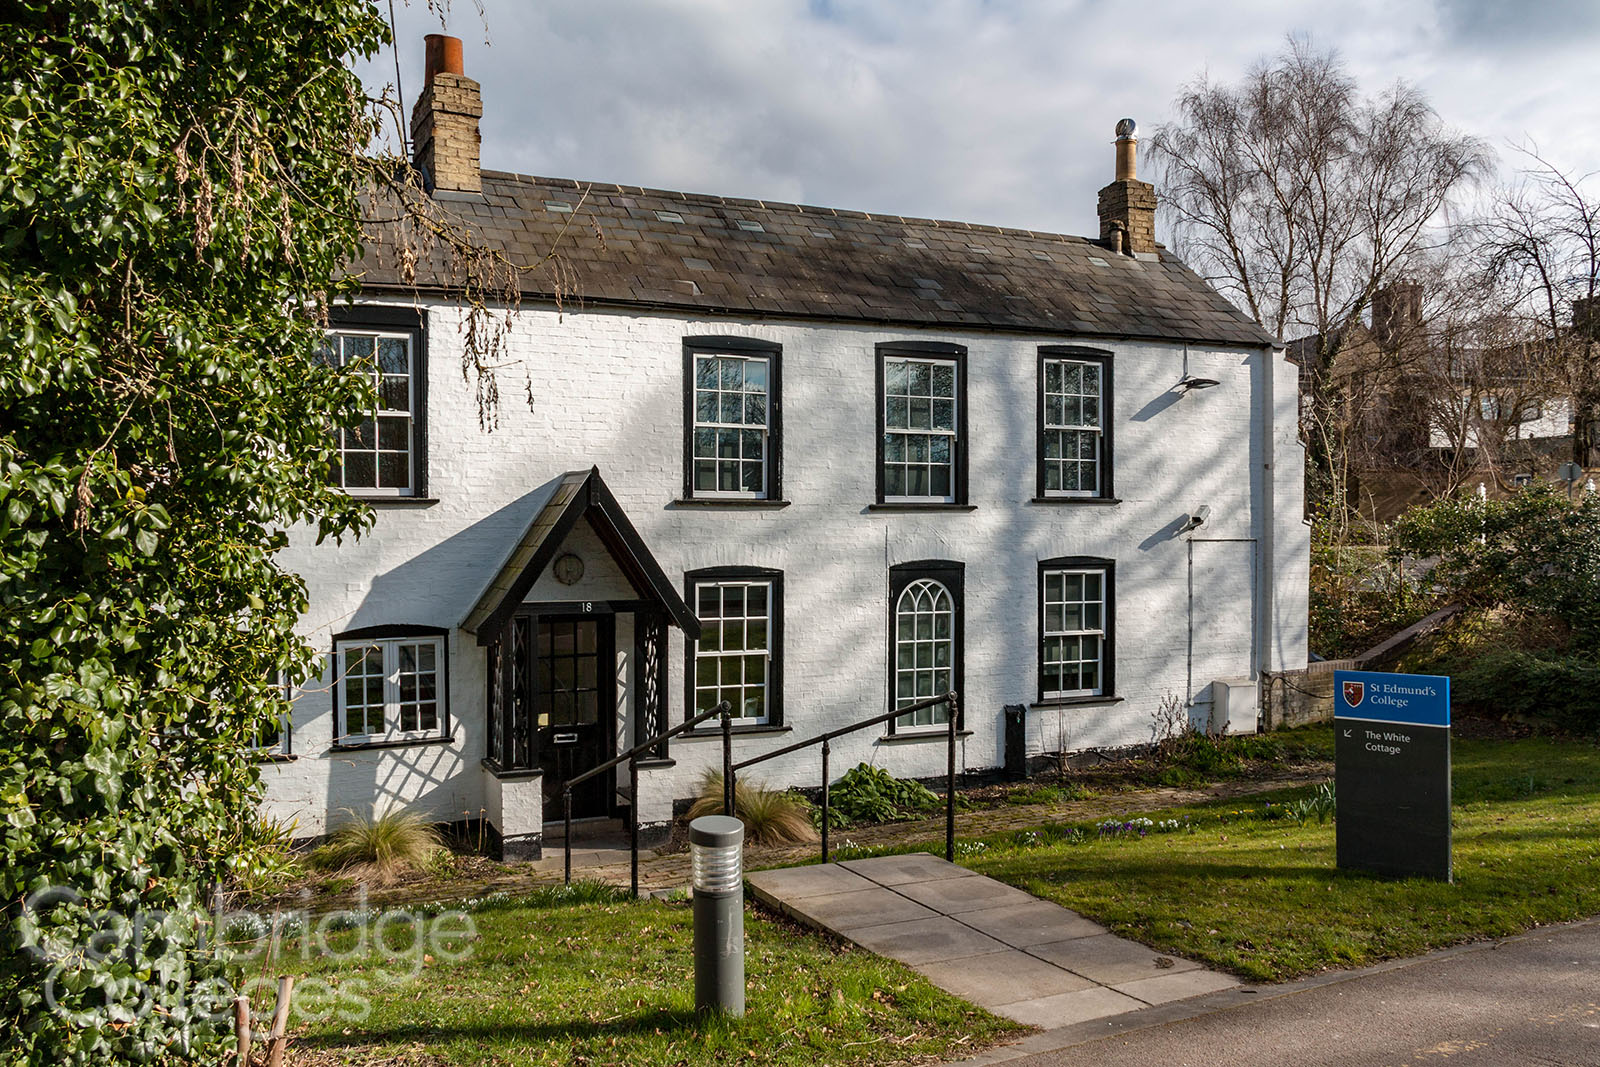 St Edmund's college White cottage